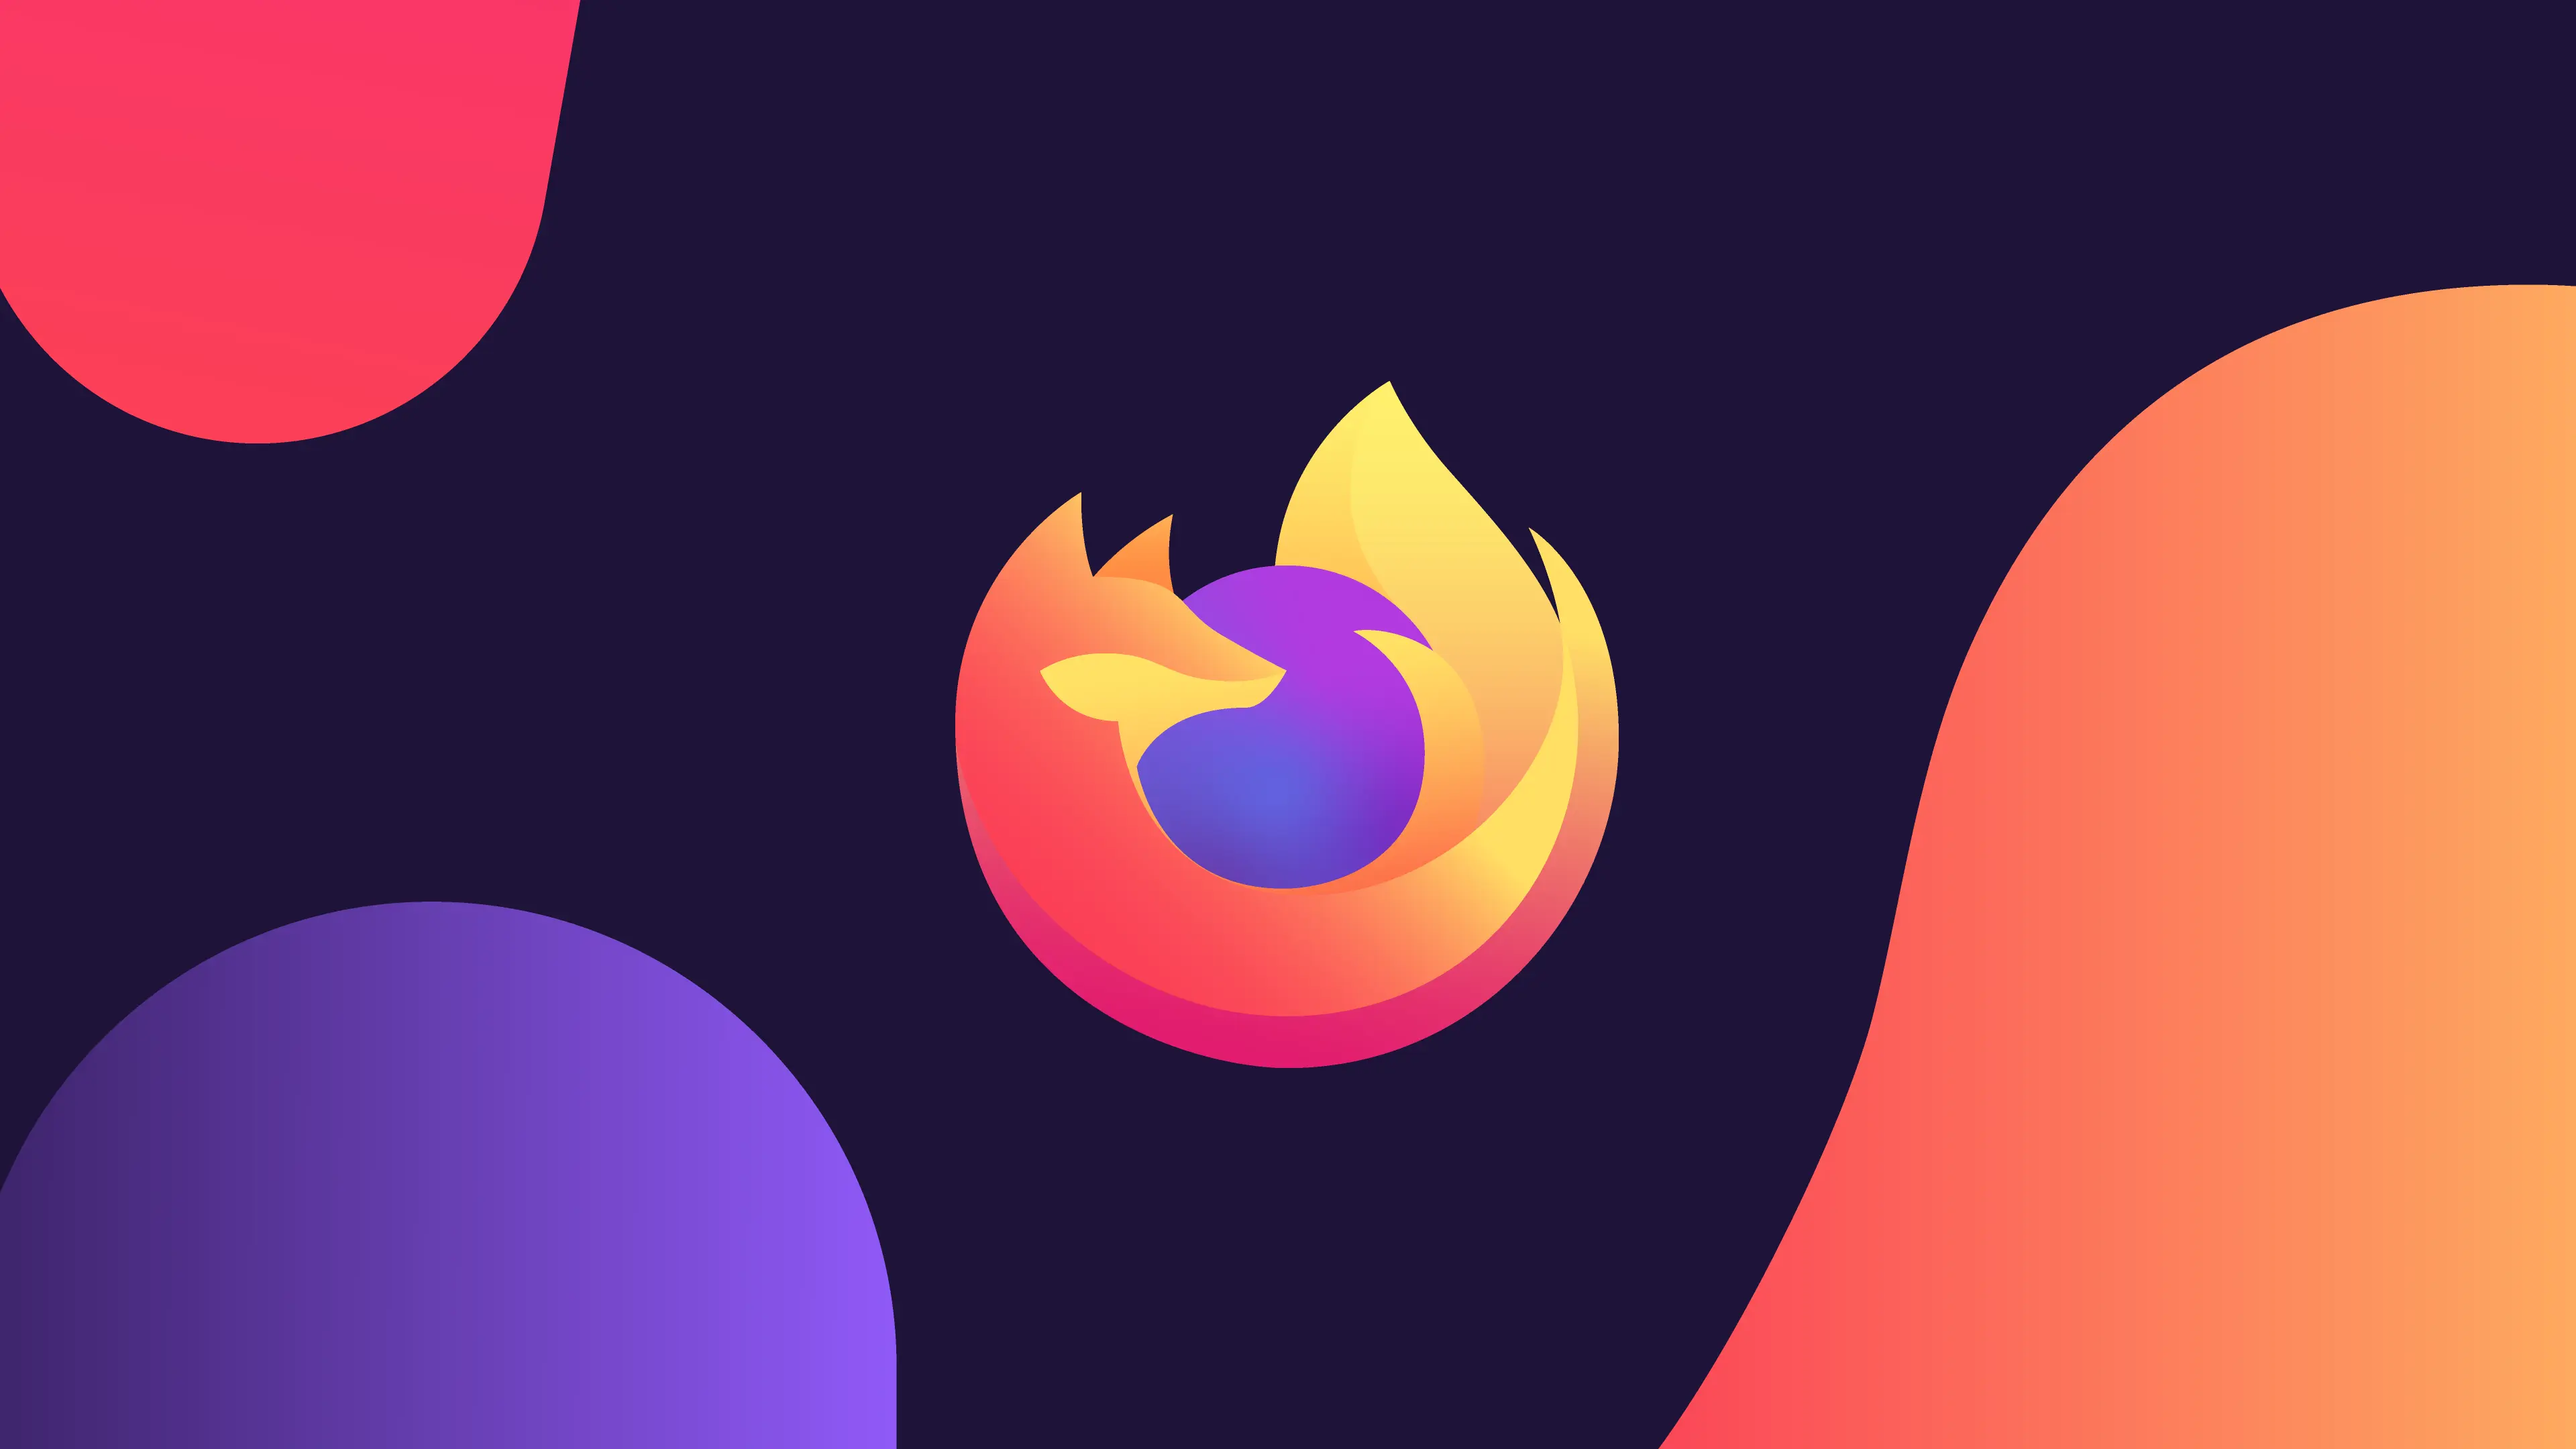 Ya está aquí Firefox 91 con funciones de privacidad y protección mejorada contra las cookies